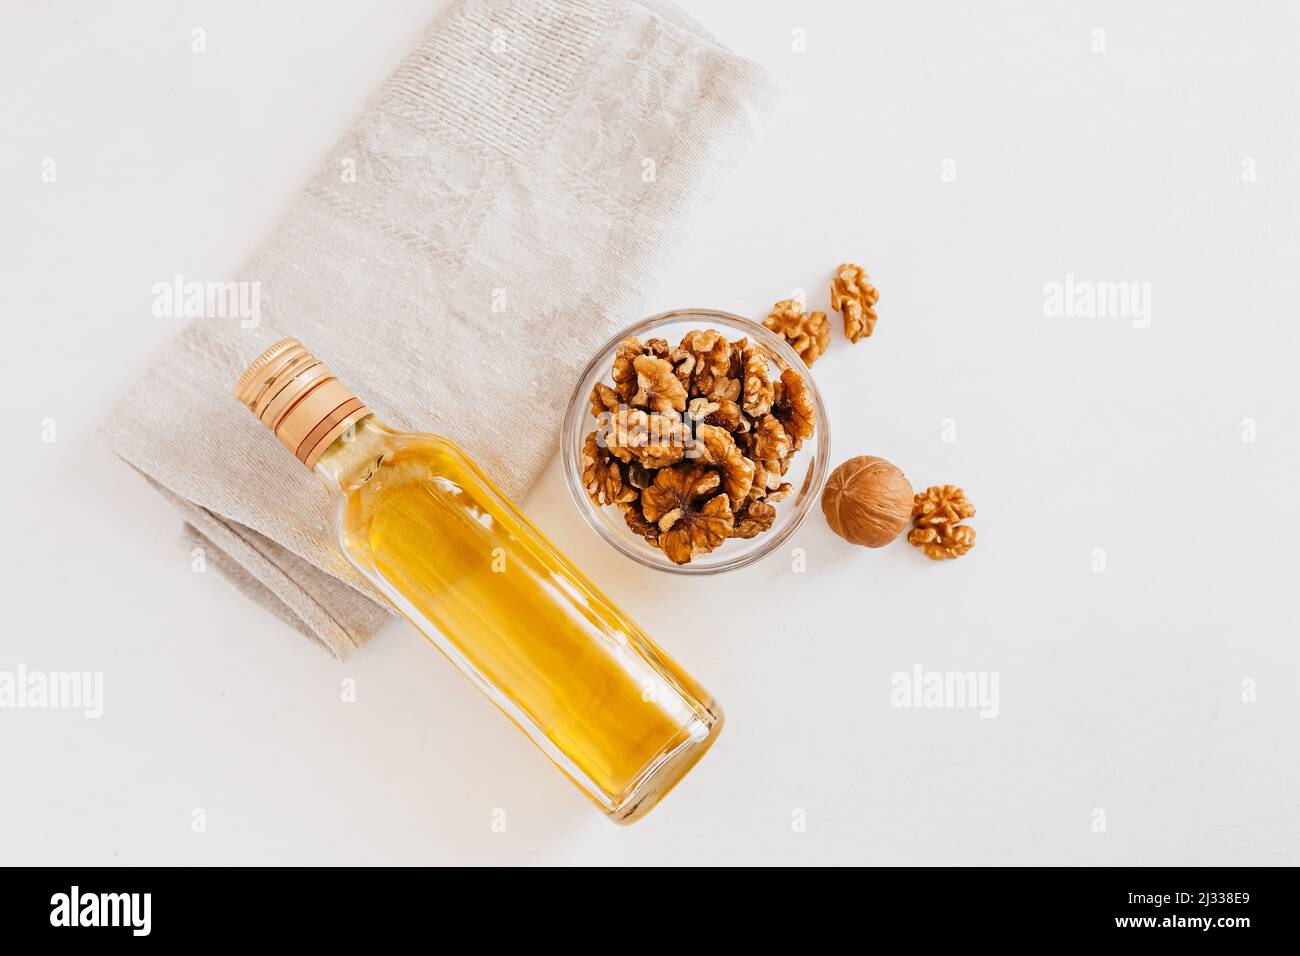 Walnuss oder Olivenöl in Glas Flasche, ganze große geschälte Walnusskern mit dünner Schale auf weißem Hintergrund. Gesunde Ernährung für das Gehirn. Frische Walnüsse zurück Stockfoto